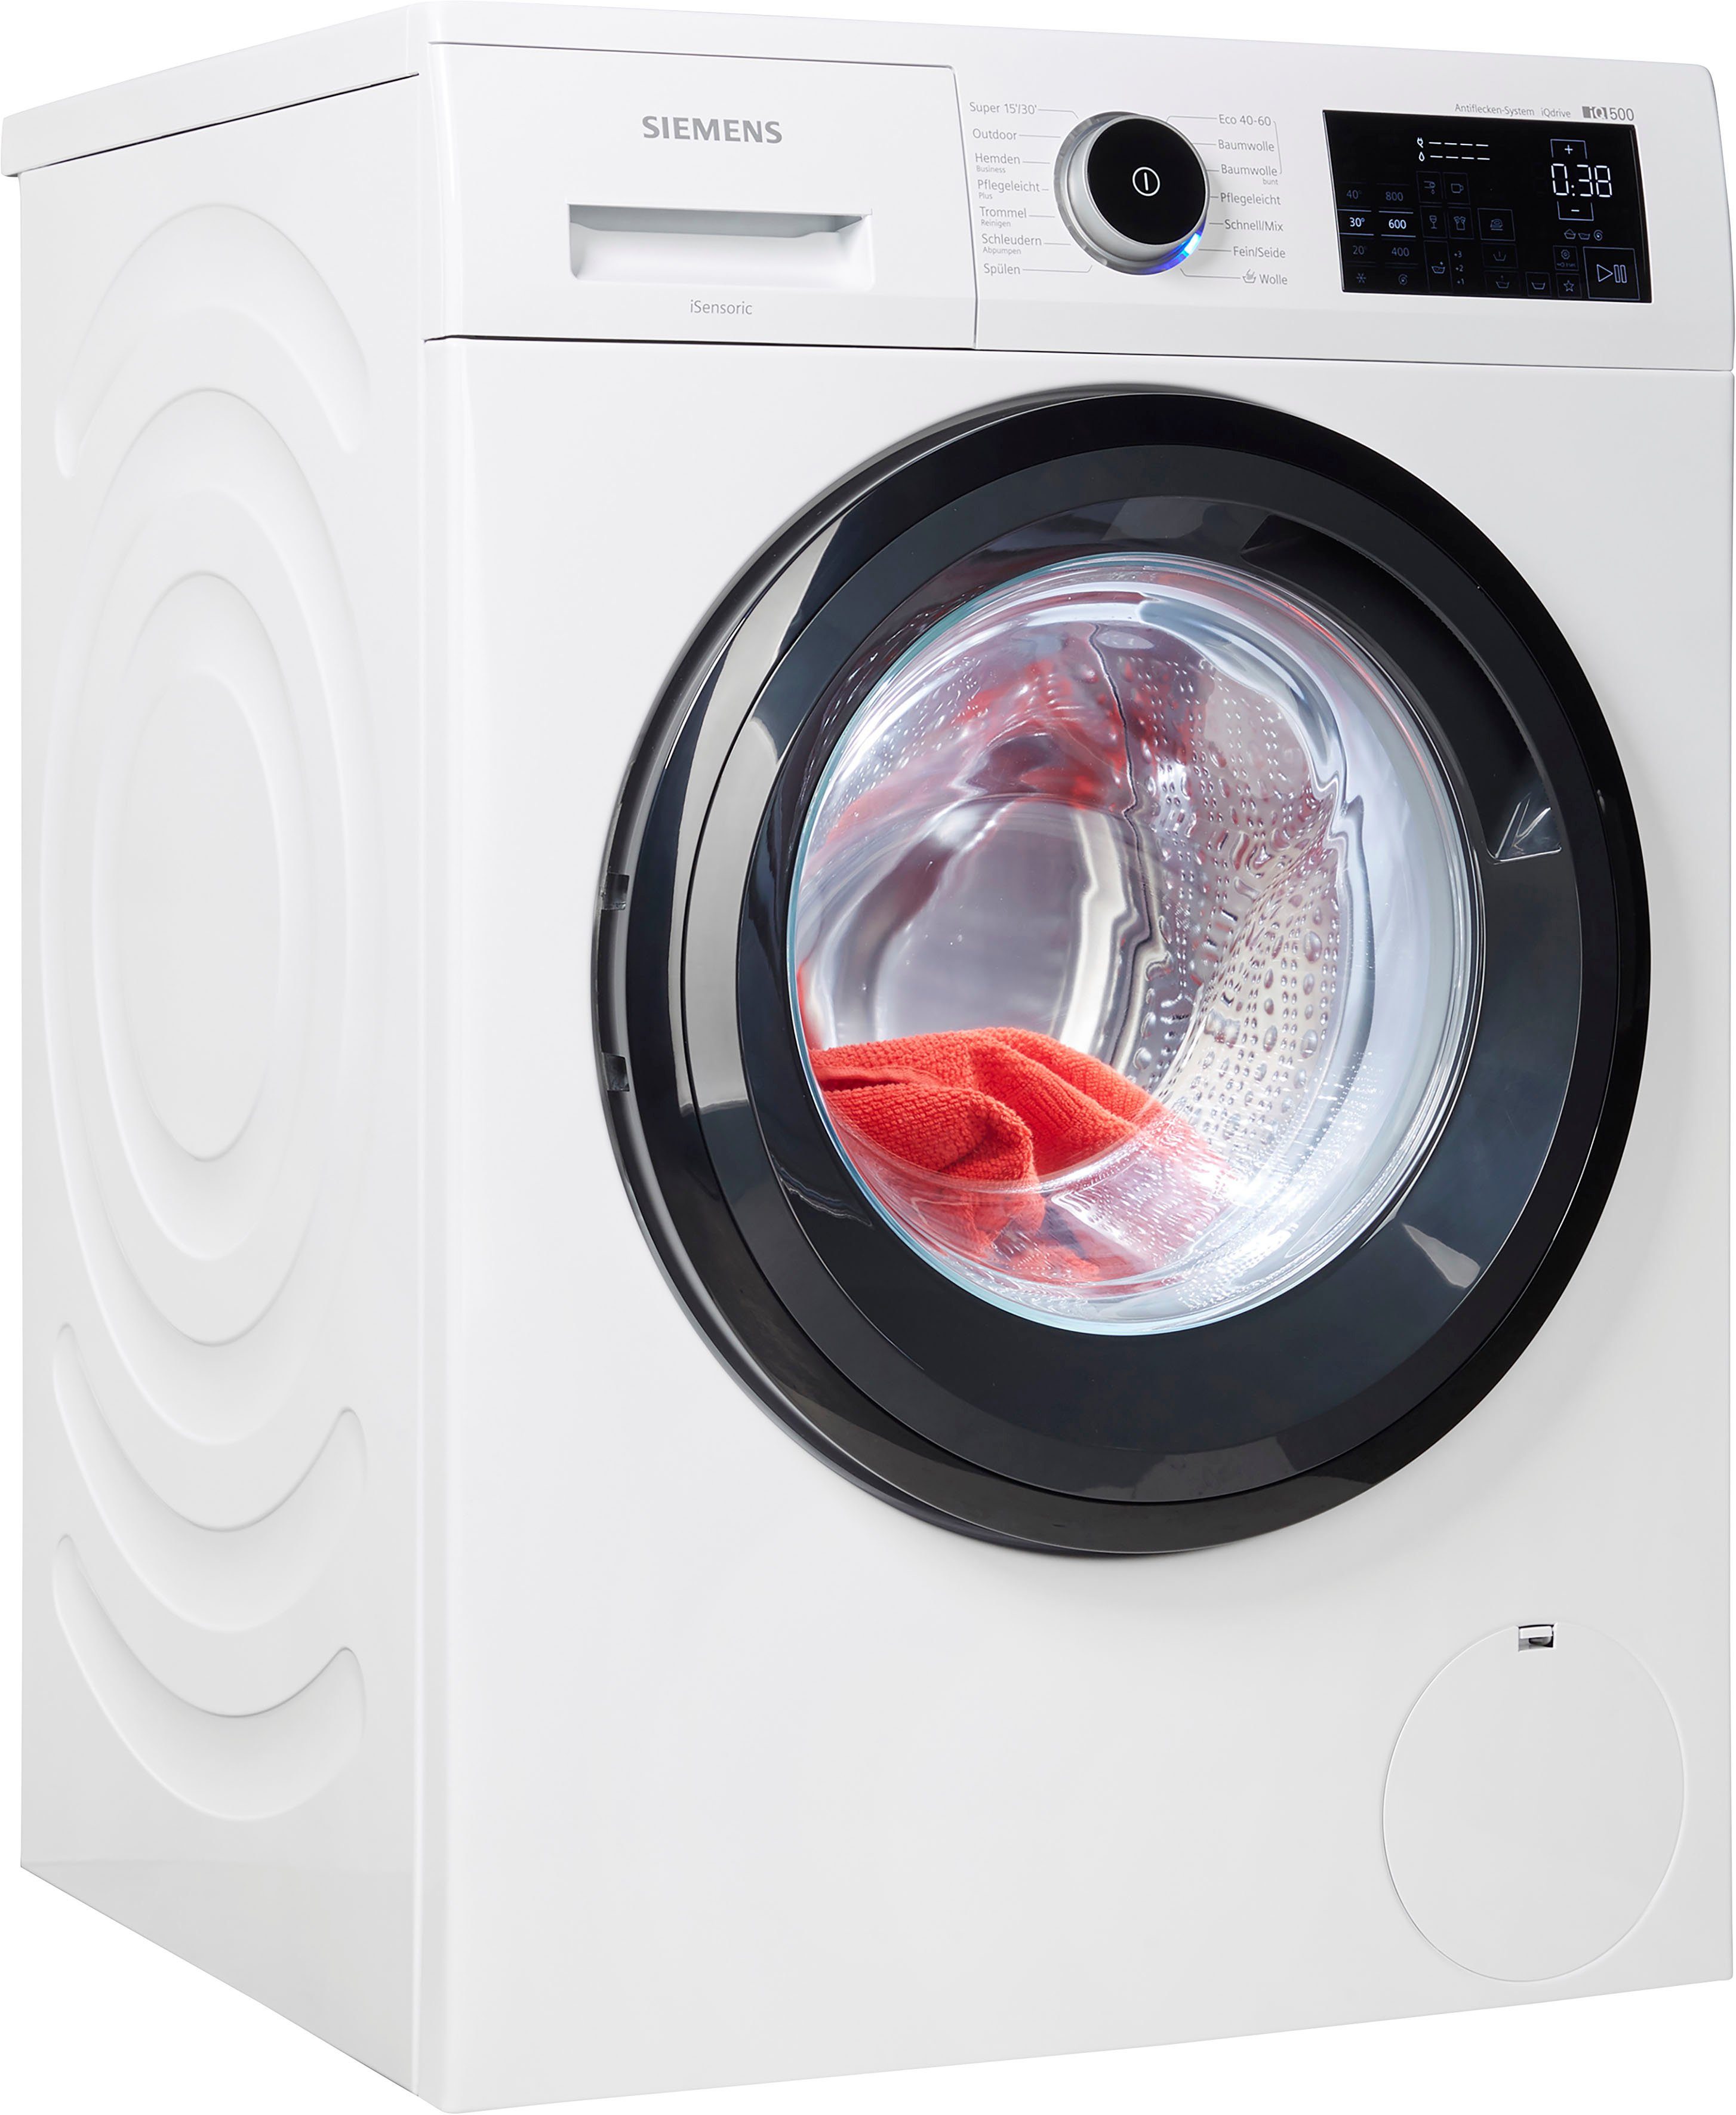 SIEMENS Waschmaschine iQ500 WM14URECO, 9 kg, 1400 U/min online kaufen | OTTO